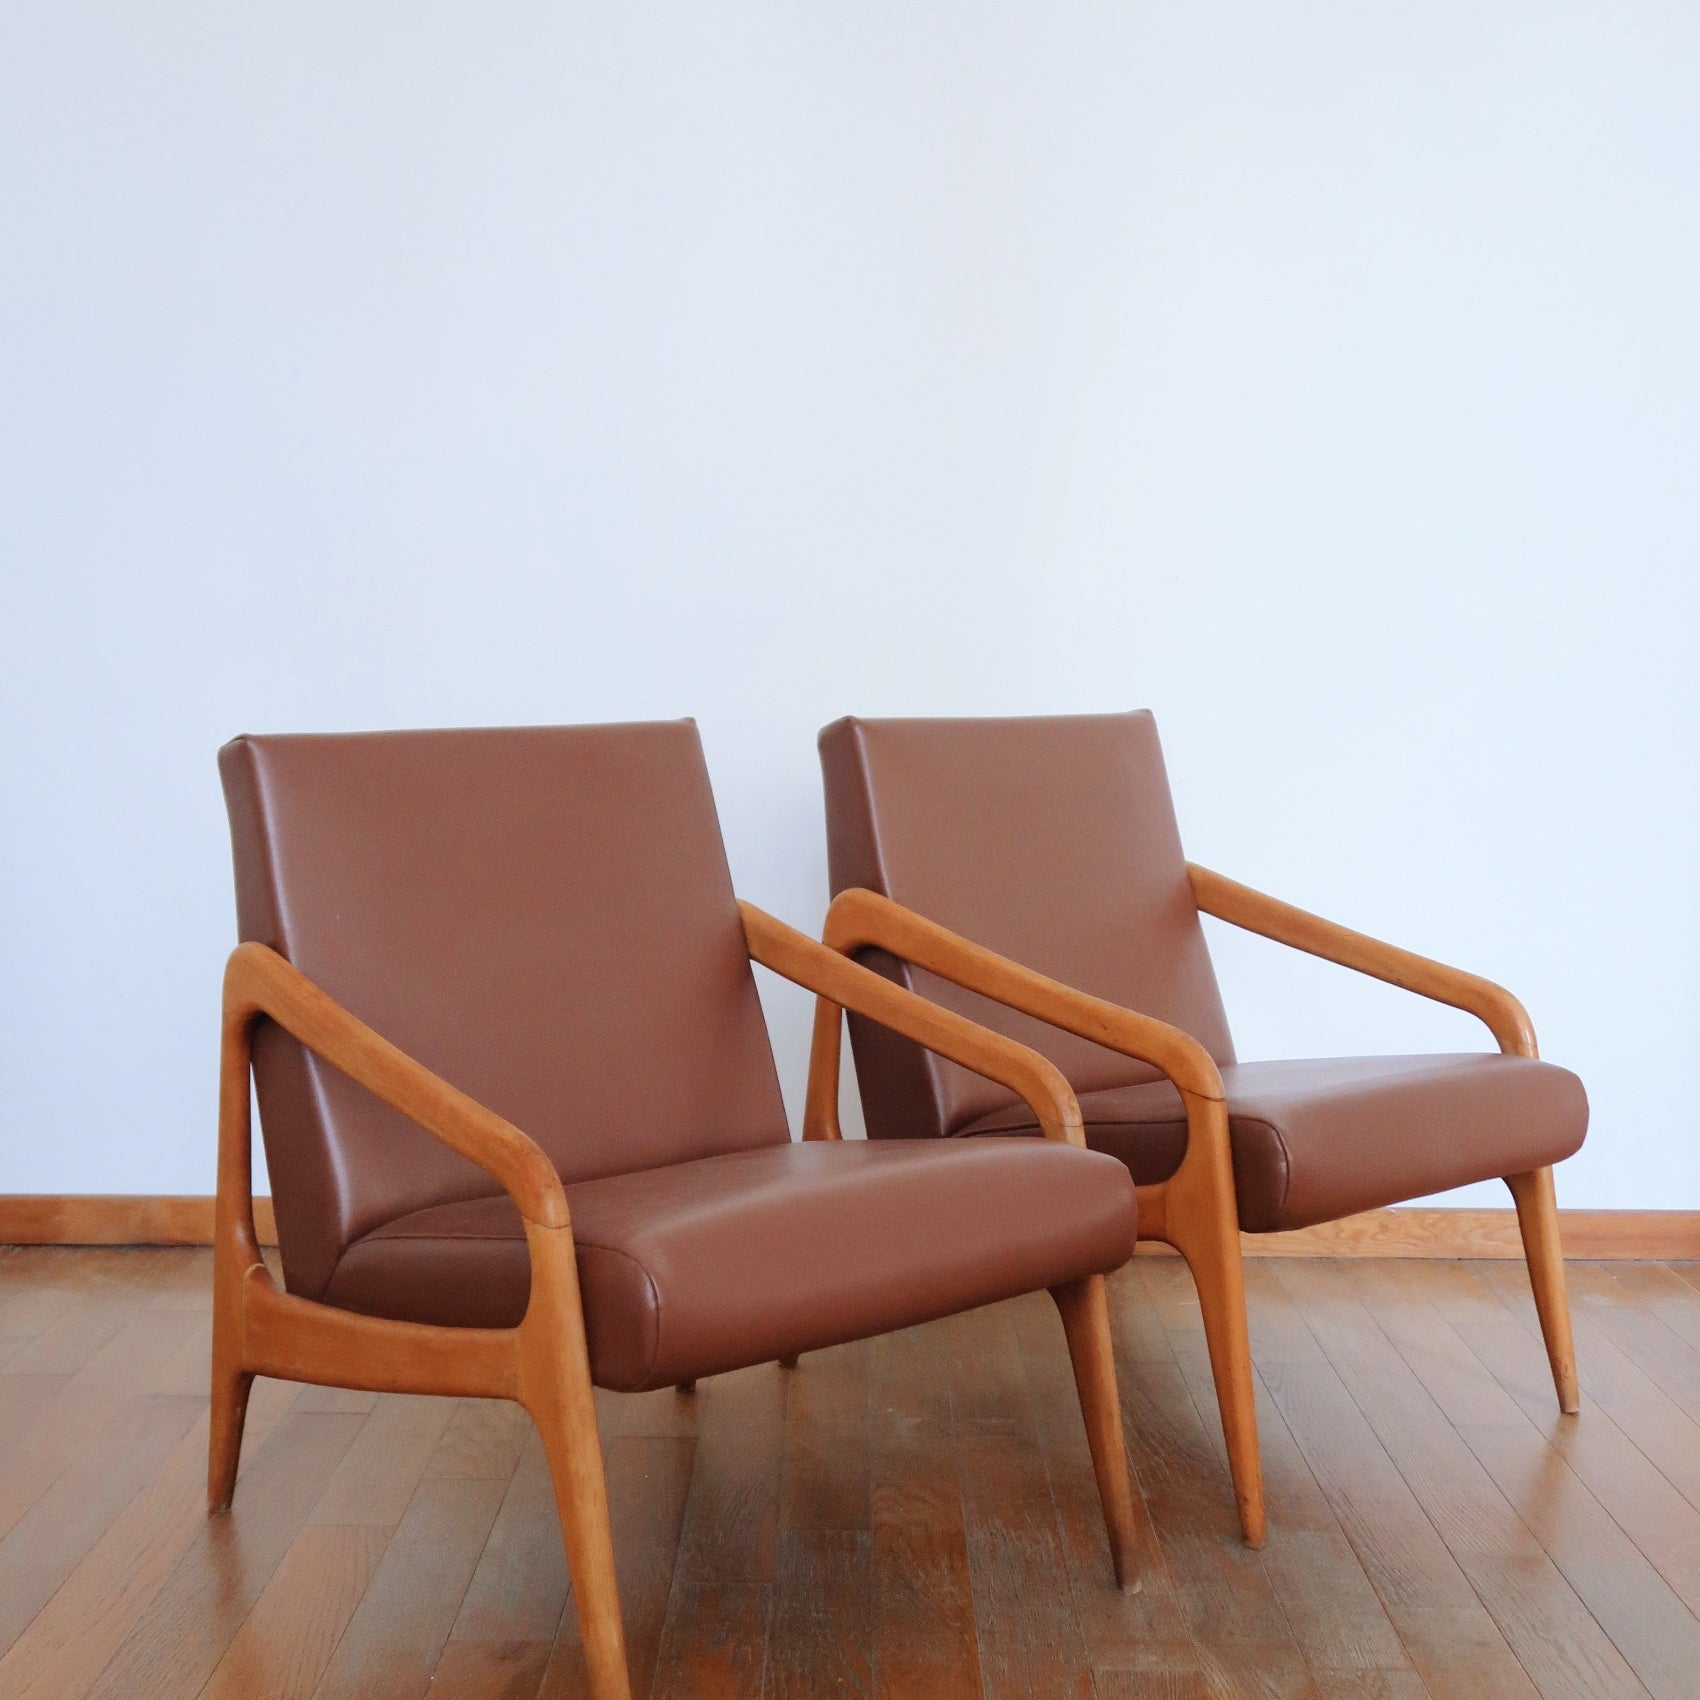 paire fauteuil scandinave 2 skaï cuir bois hêtre vintage marron stella dorian chauffeuse chaises pieds compas